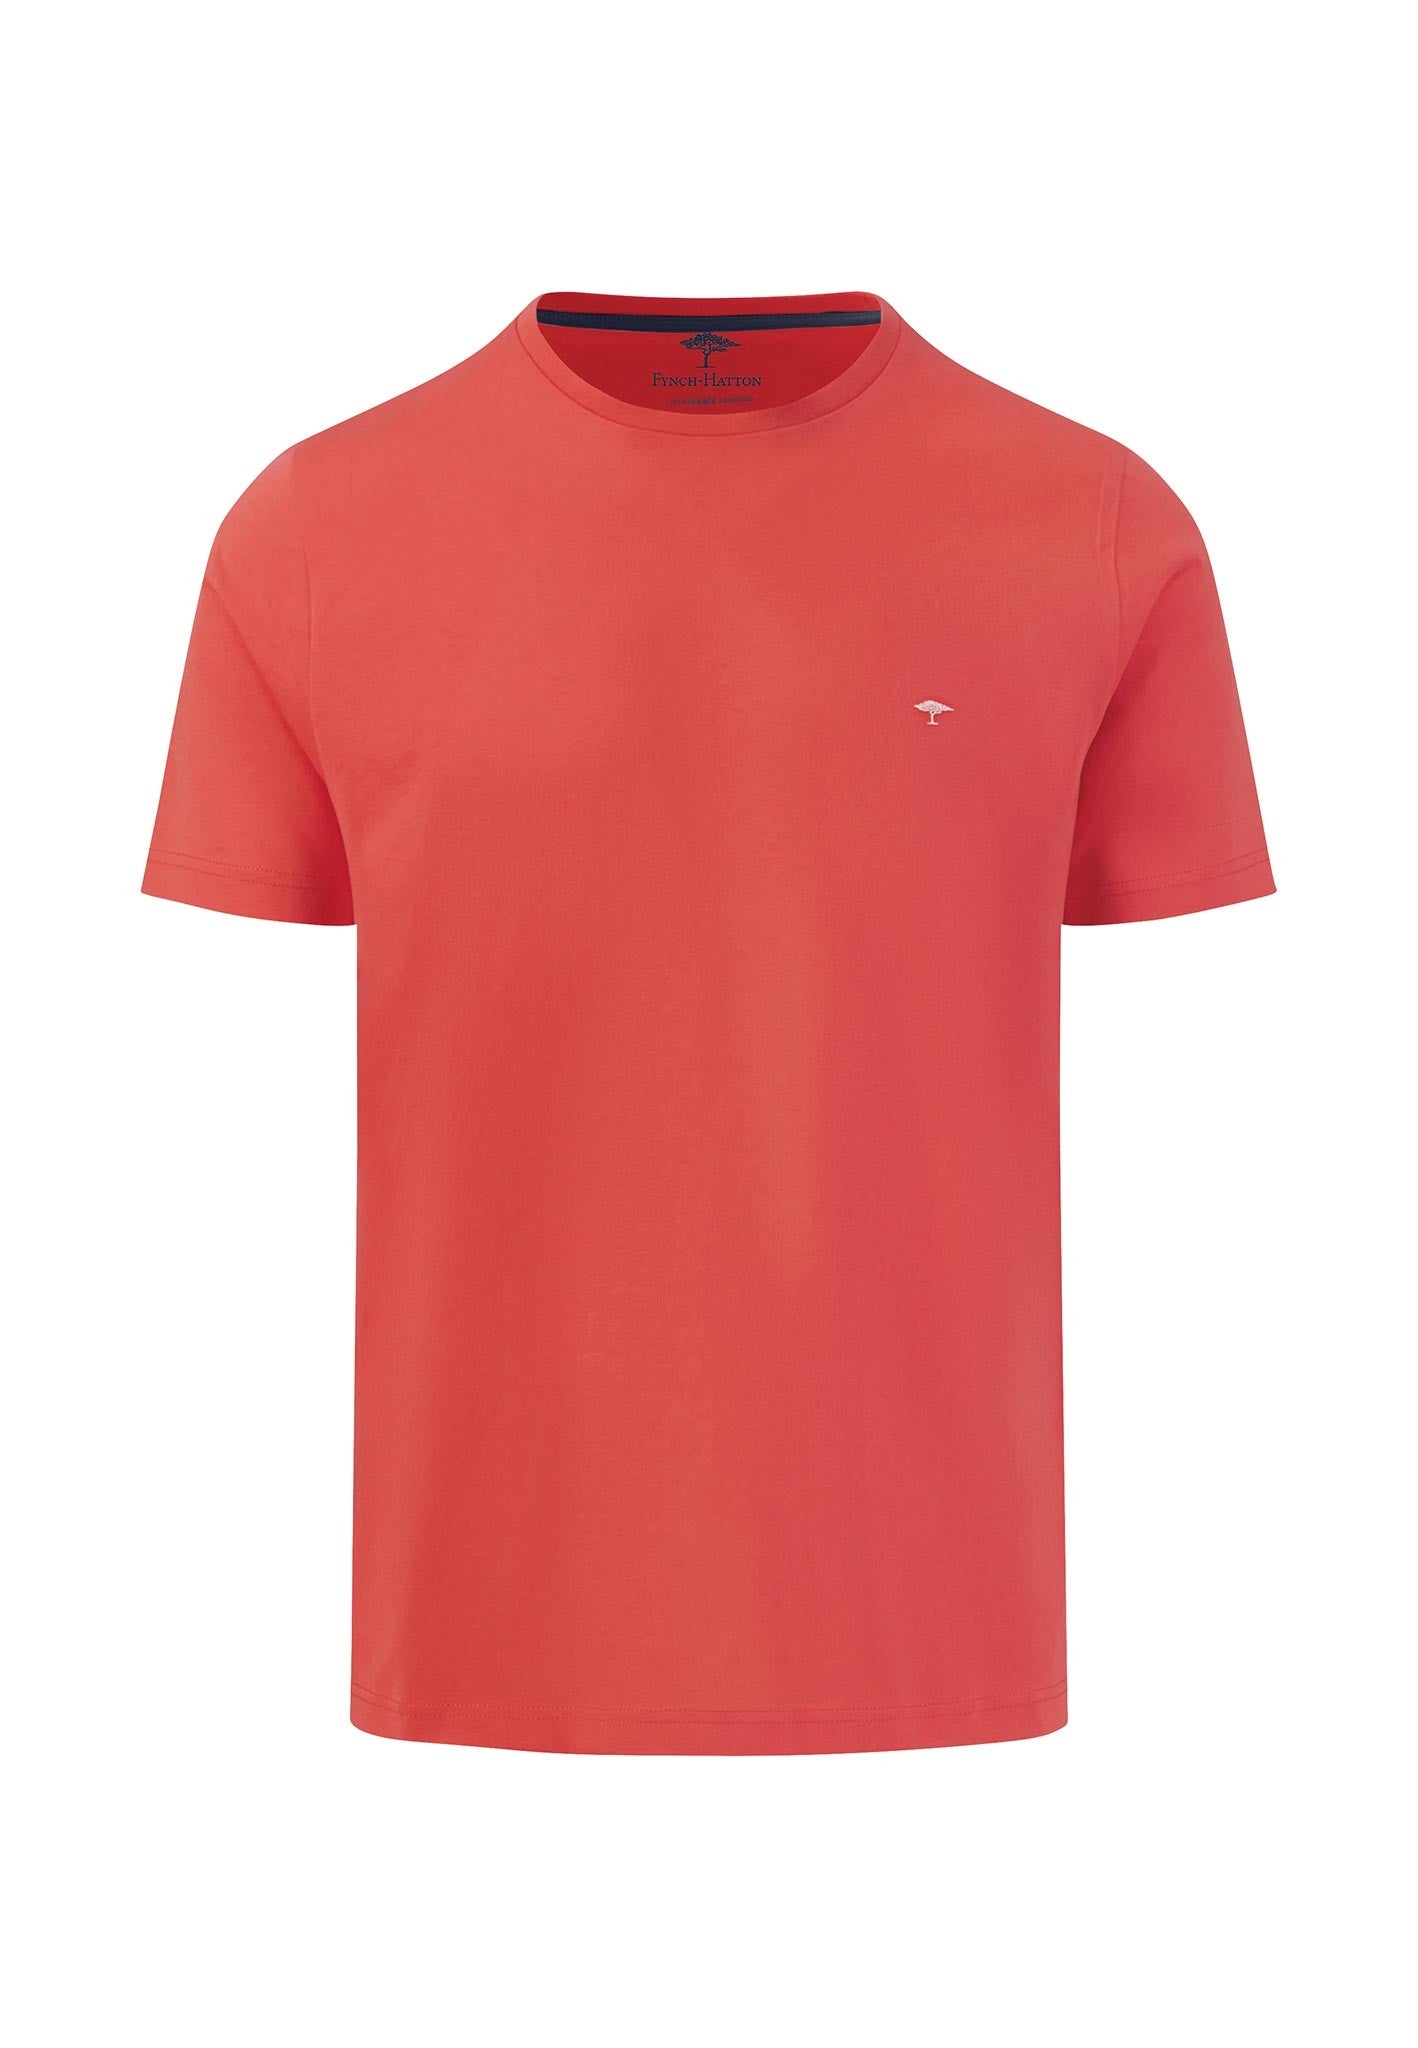 Fynch Hatton Superfine Cotton T-Shirt Red